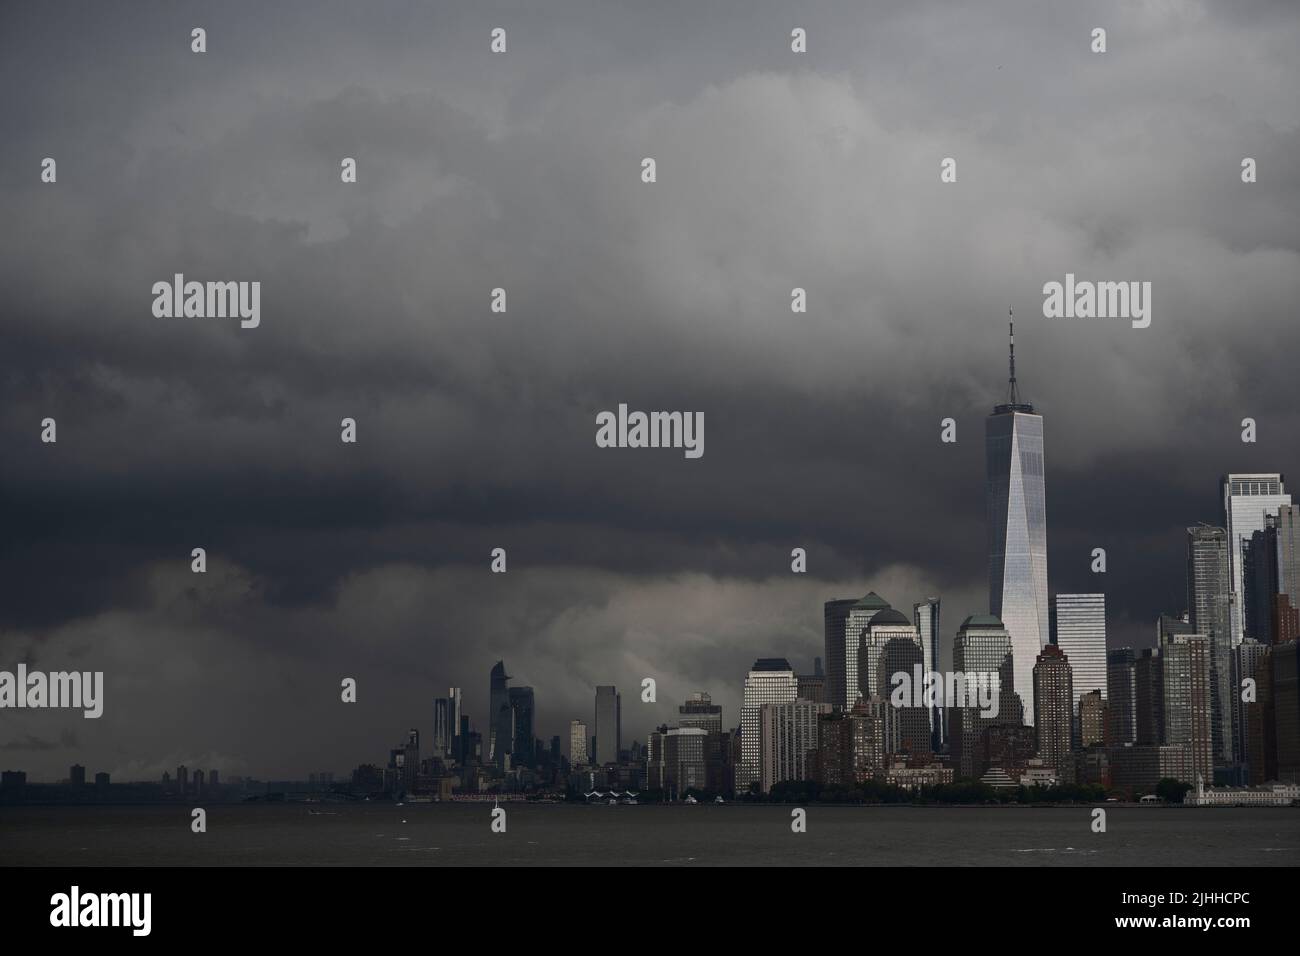 New York, États-Unis. 18 juillet 2022. Des nuages de tempête spectaculaires survolent Manhattan alors que les températures devraient dépasser 90 degrés Fahrenheit (32 degrés Celsius) cette semaine. Banque D'Images